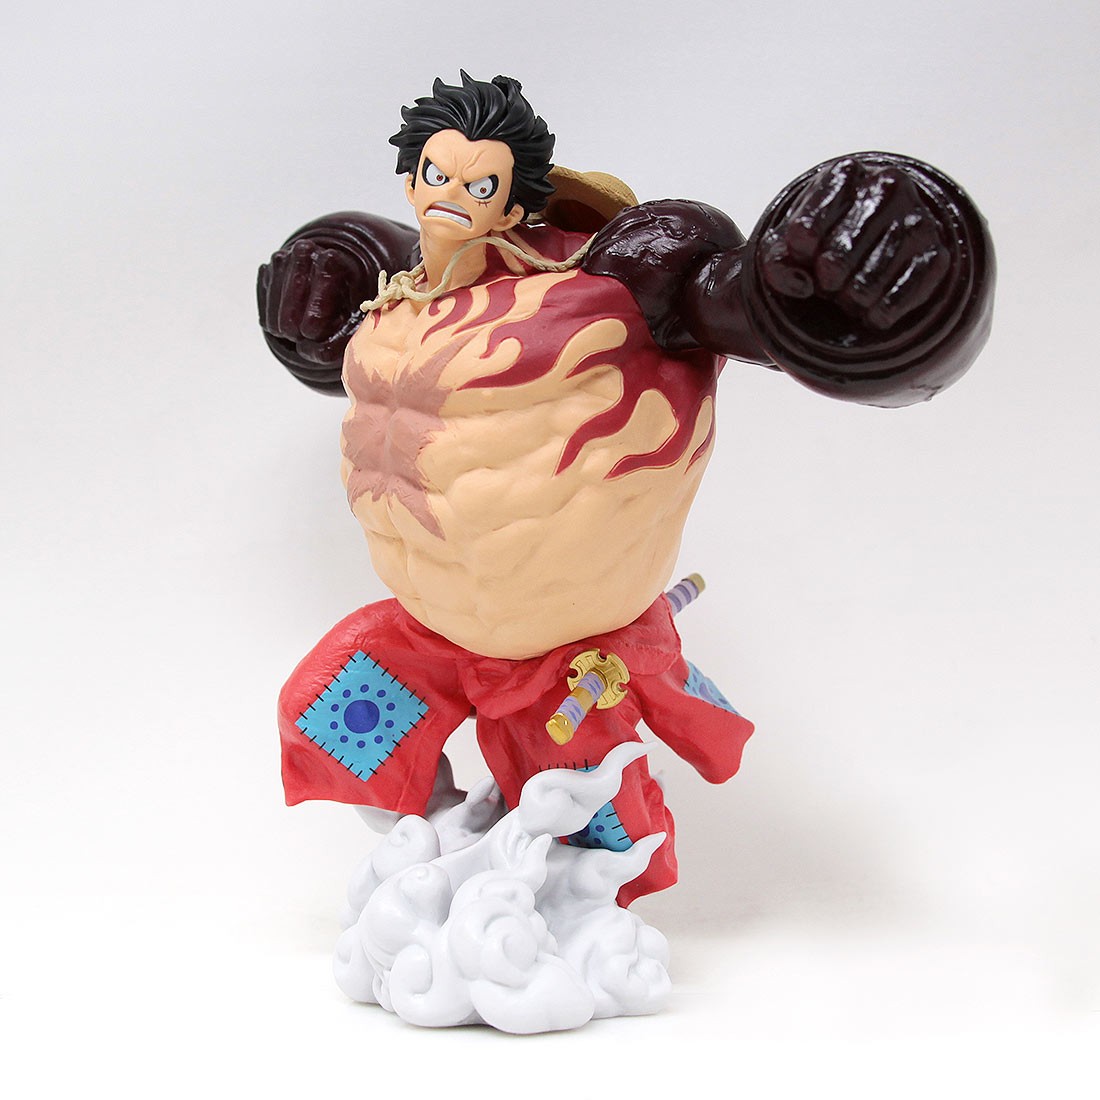 Banpresto One Piece Monkey Luffy Gear 4 2D Master Stars Piece Statue  UTCBP18133 - Saga Concepts